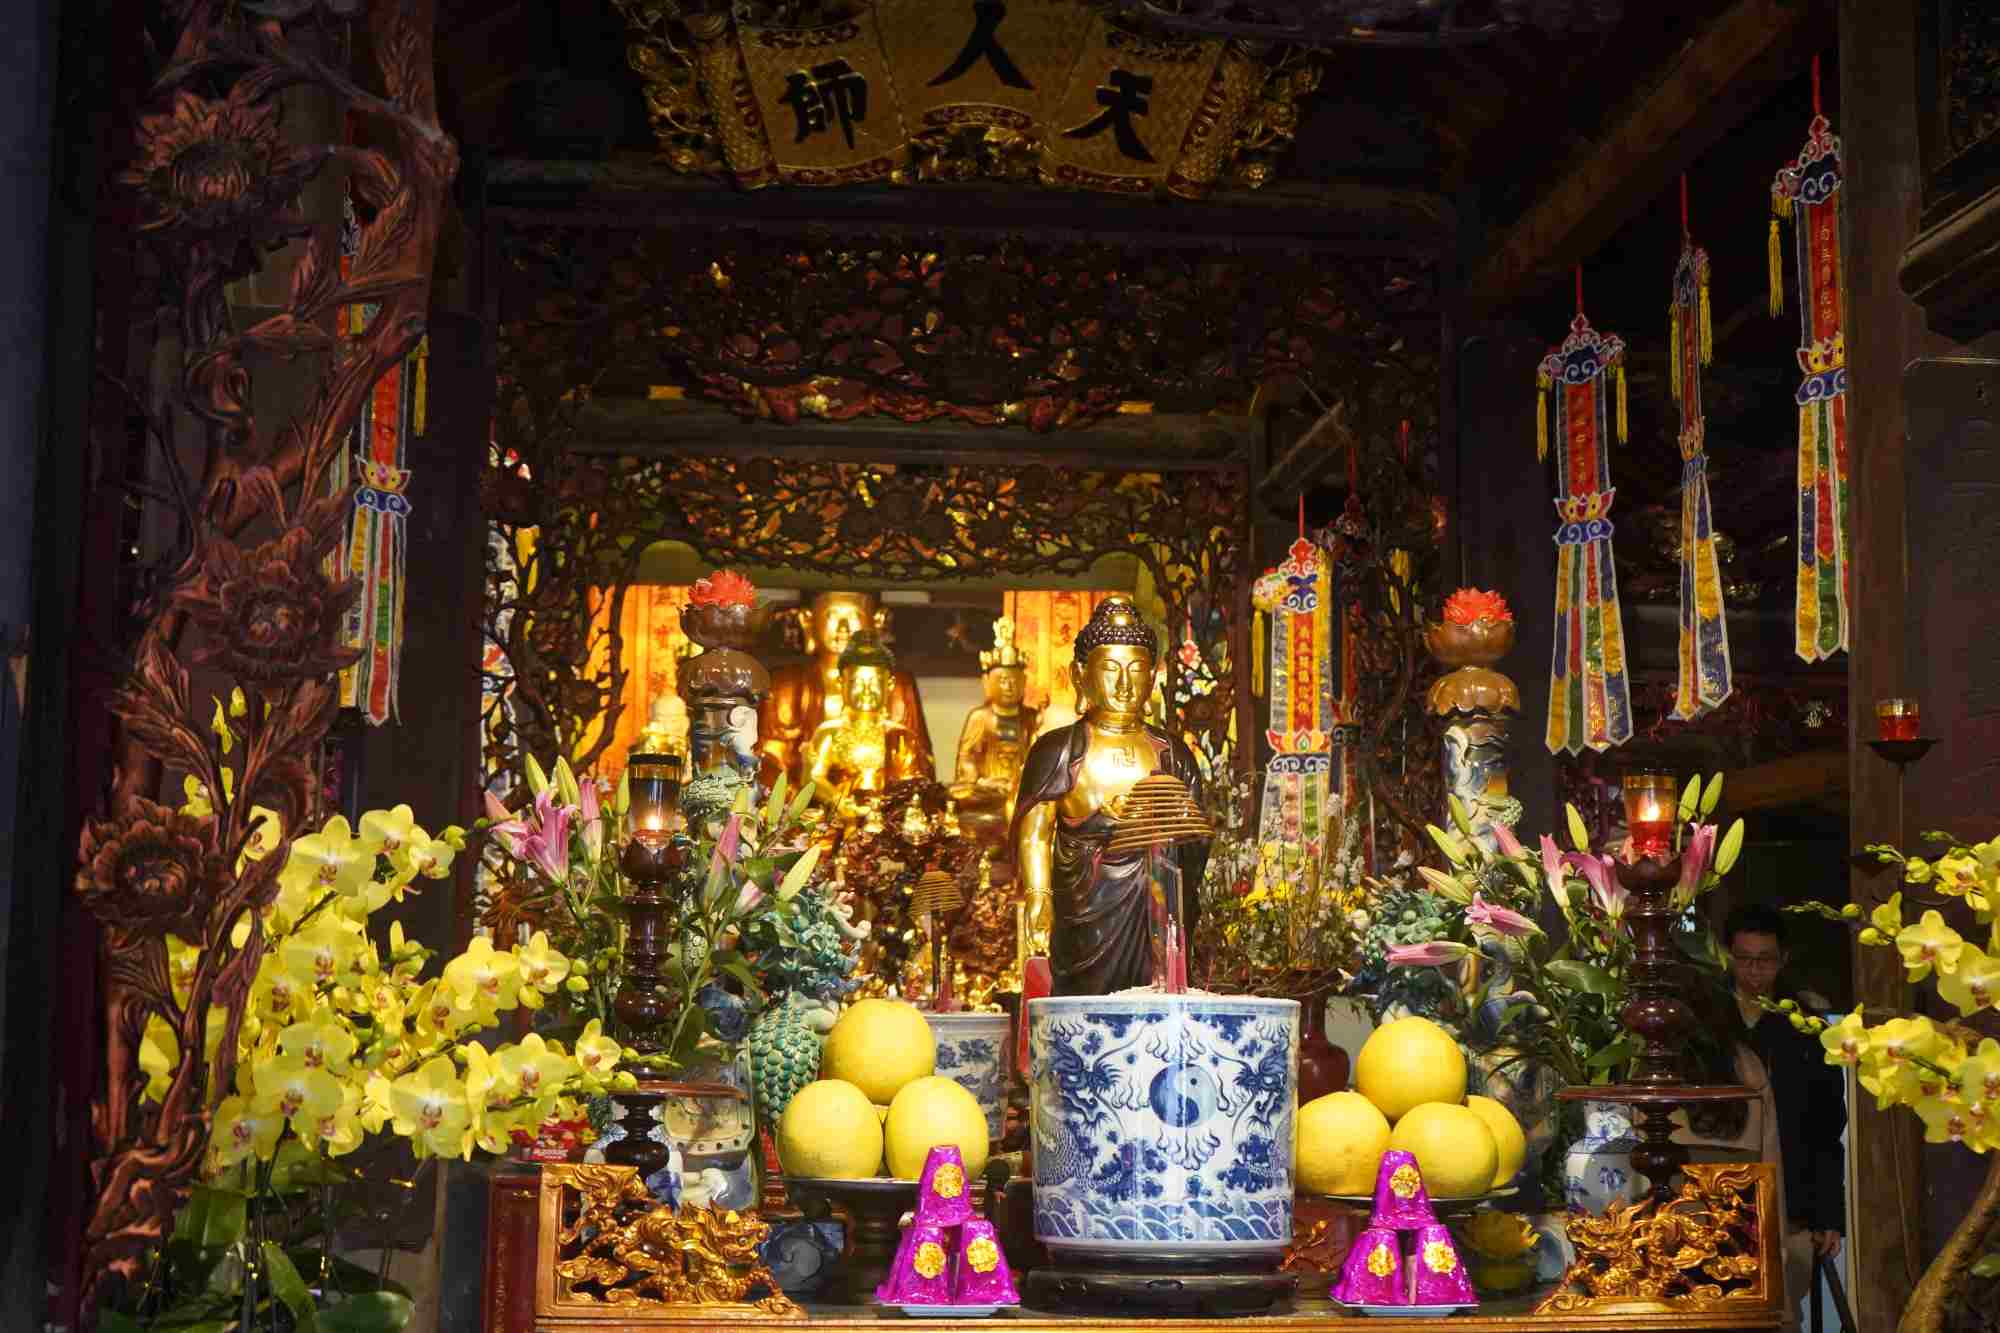 Dưới mái chùa cổ kính này, đang bảo lưu nhiều pho tượng Phật quý bằng gỗ, mang đậm phong cách dân gian với các đồ án trang trí nghệ thuật được thờ tại toà phật điện như các pho tượng phật: Tam Thế, A Di Đà, Văn Thù, Phổ Hiền, Hộ Pháp…